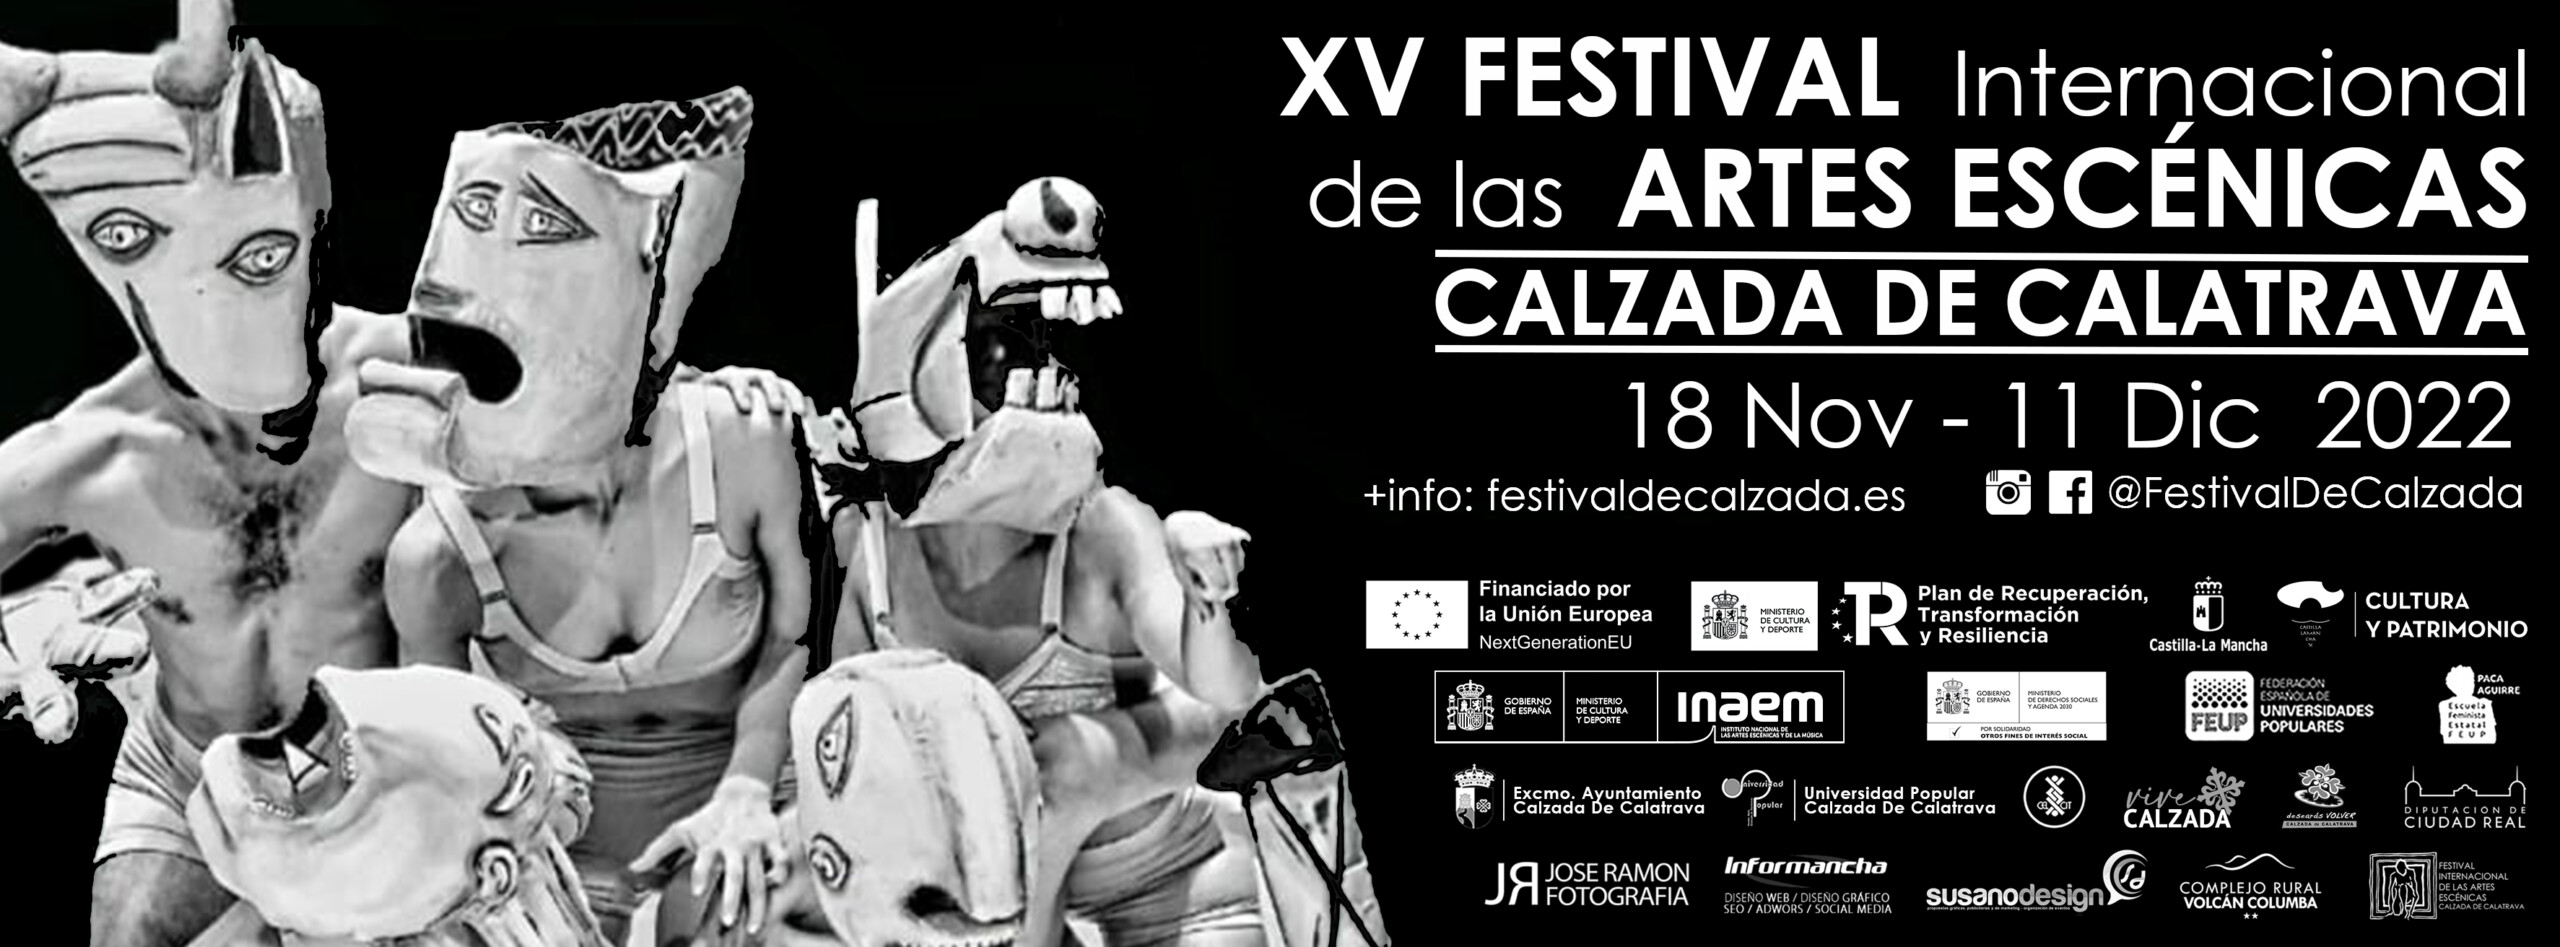 XV Festival Internacional De Las Artes Escénicas